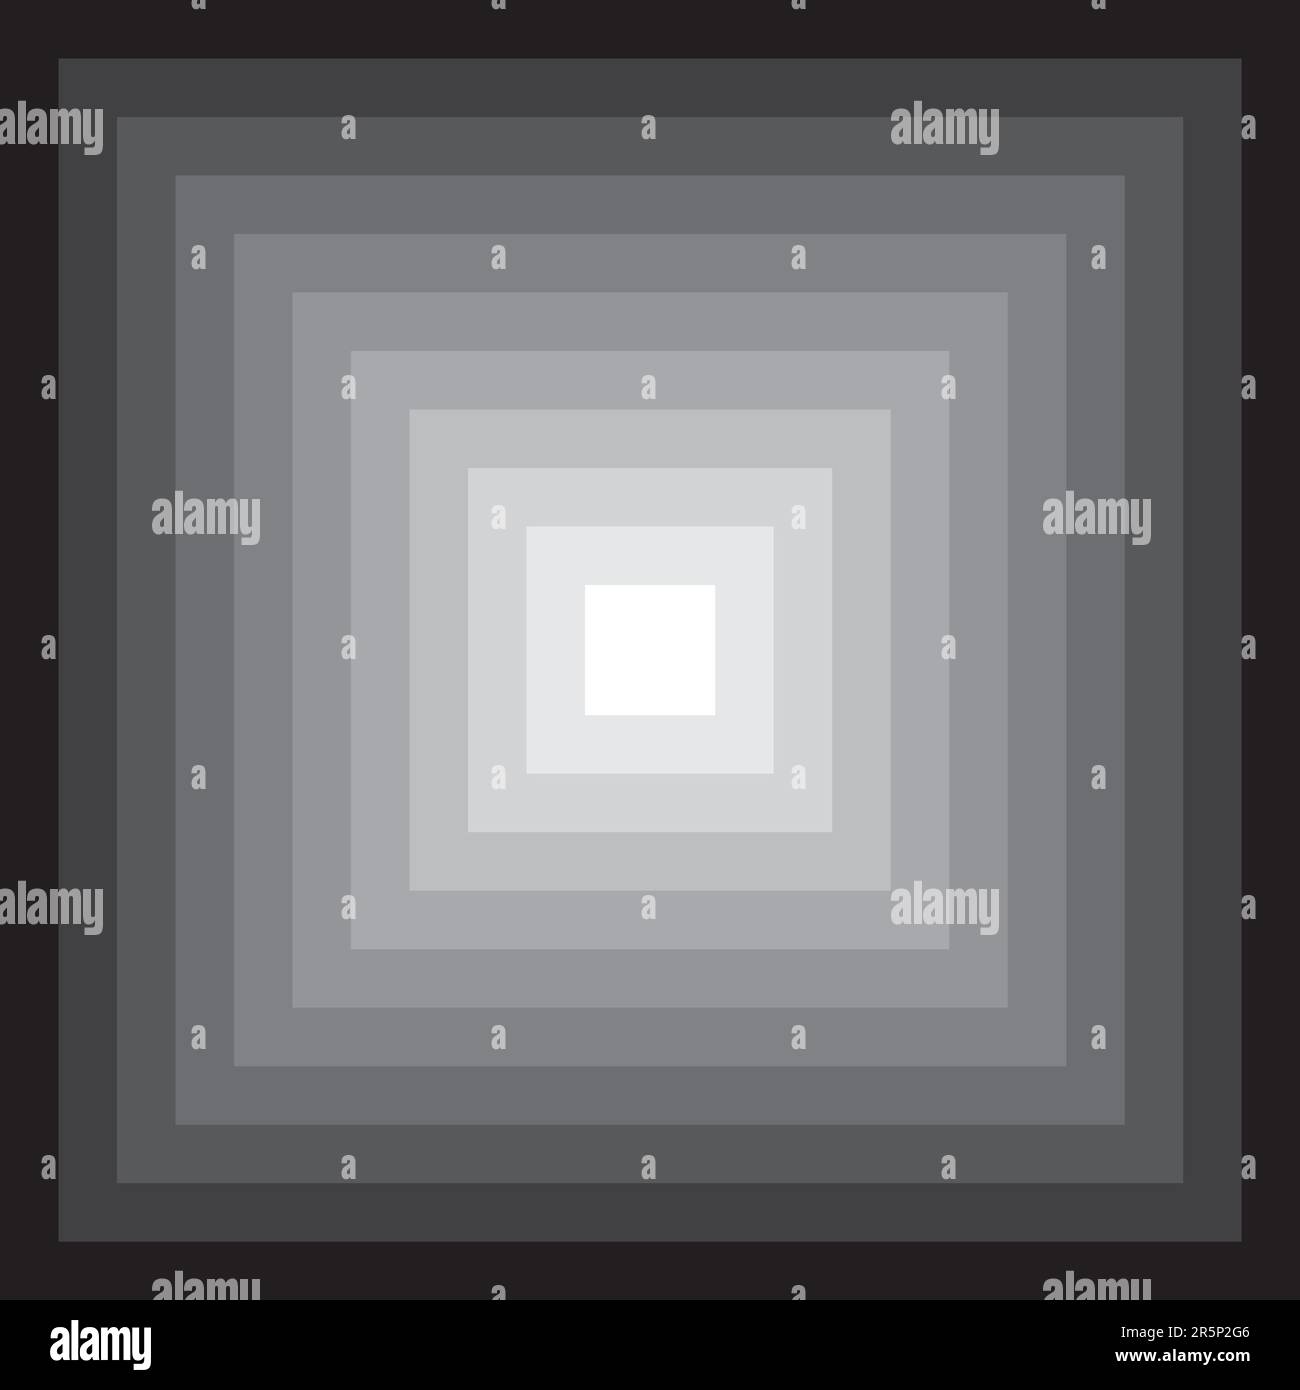 Abbildung: Farbiger abstrakter, mehrfacher quadratischer 3D-Rahmen in verlaufendem Grau Stockfoto